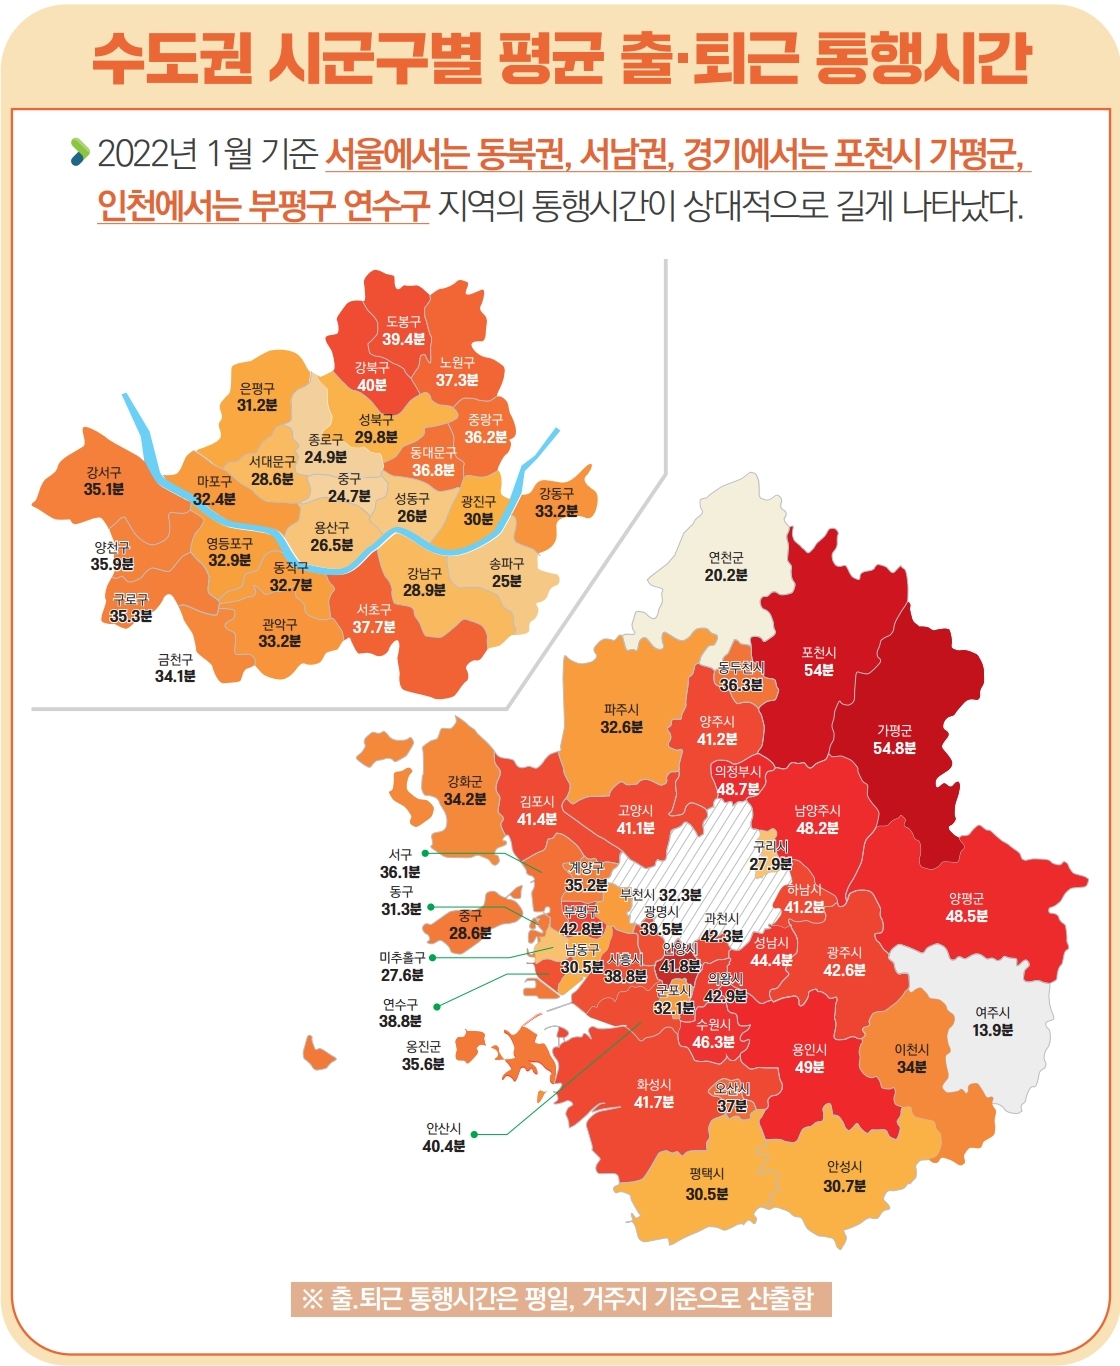 2022년 1월 기준 서울에서는 동북권, 서남권, 경기도에서는 포천시, 가평군, 인천에서는 부평구, 연수구 지역의 평균 출·퇴근 통행시간이 상대적으로 길게 나타났다.